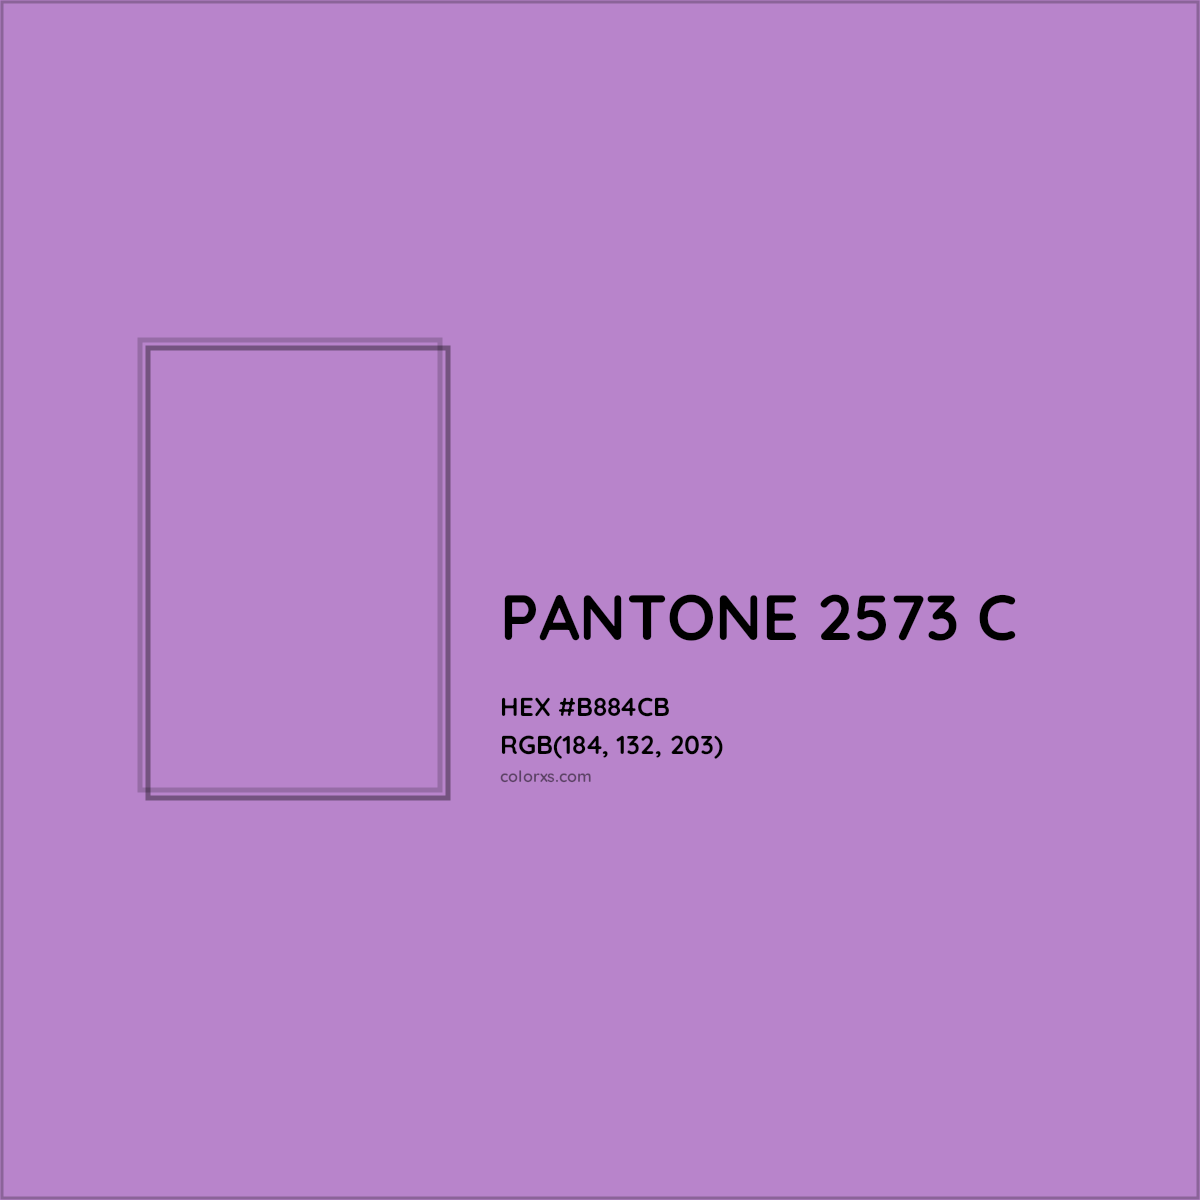 HEX #B884CB PANTONE 2573 C CMS Pantone PMS - Color Code